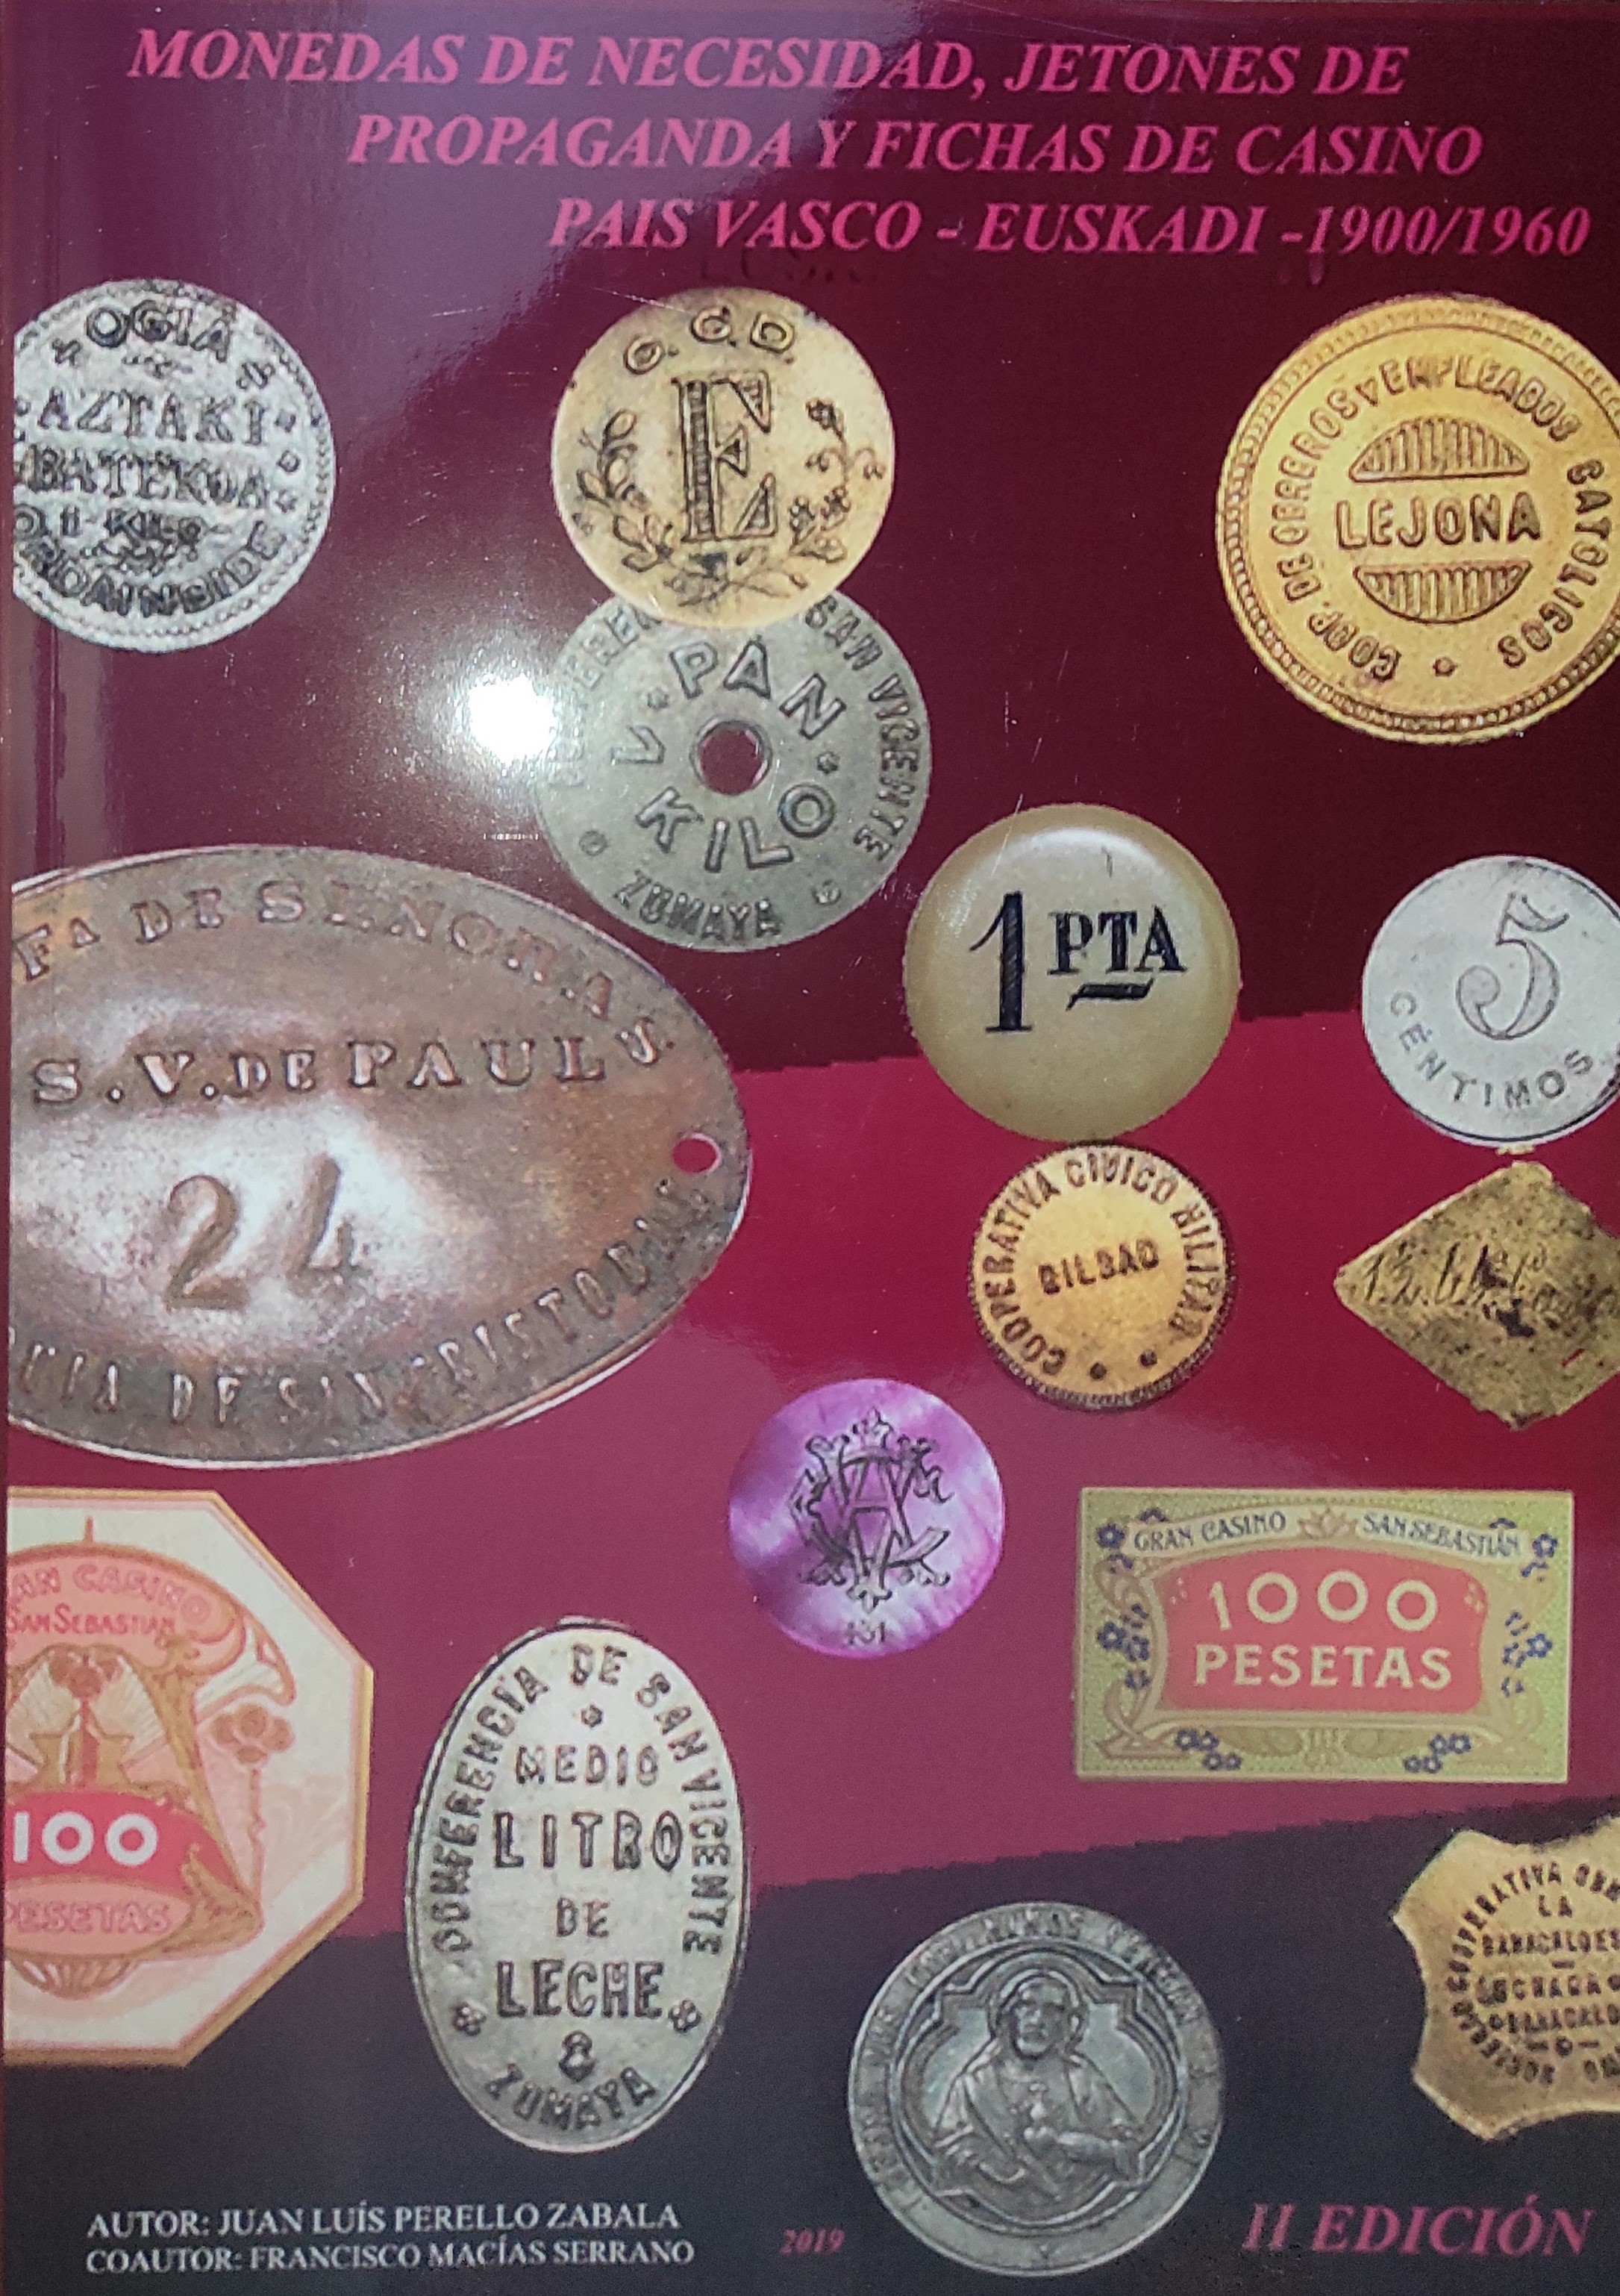 Monedas de necesidad, jetones de propaganda y fichas de casino del País Vasco-Euskadi 1900 a 1960